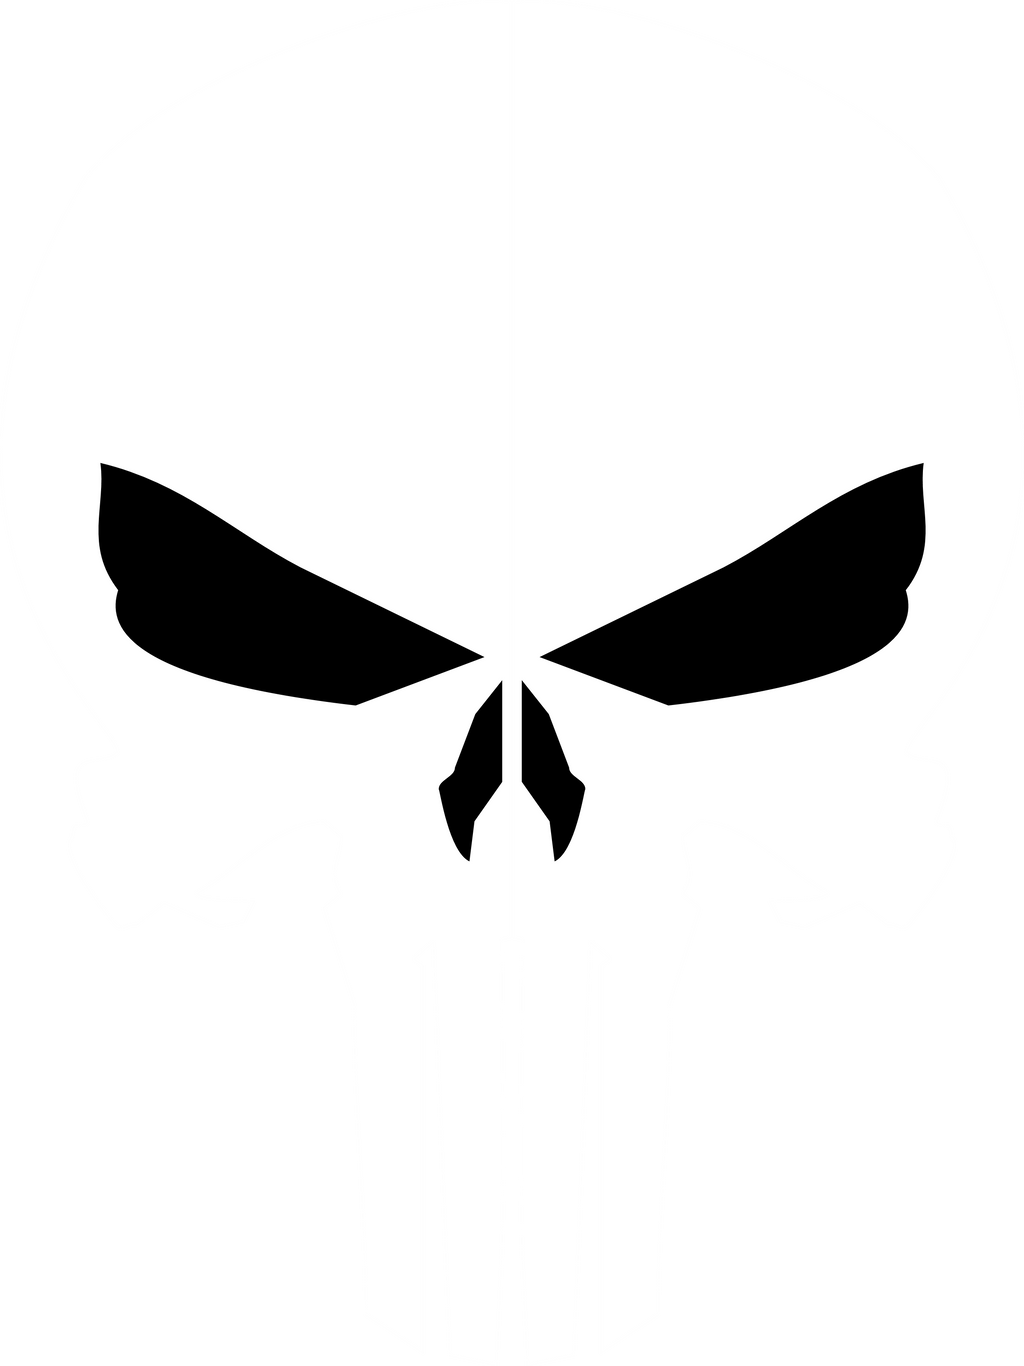 Punisher Skull 1 By Jmk Prime On Deviantart